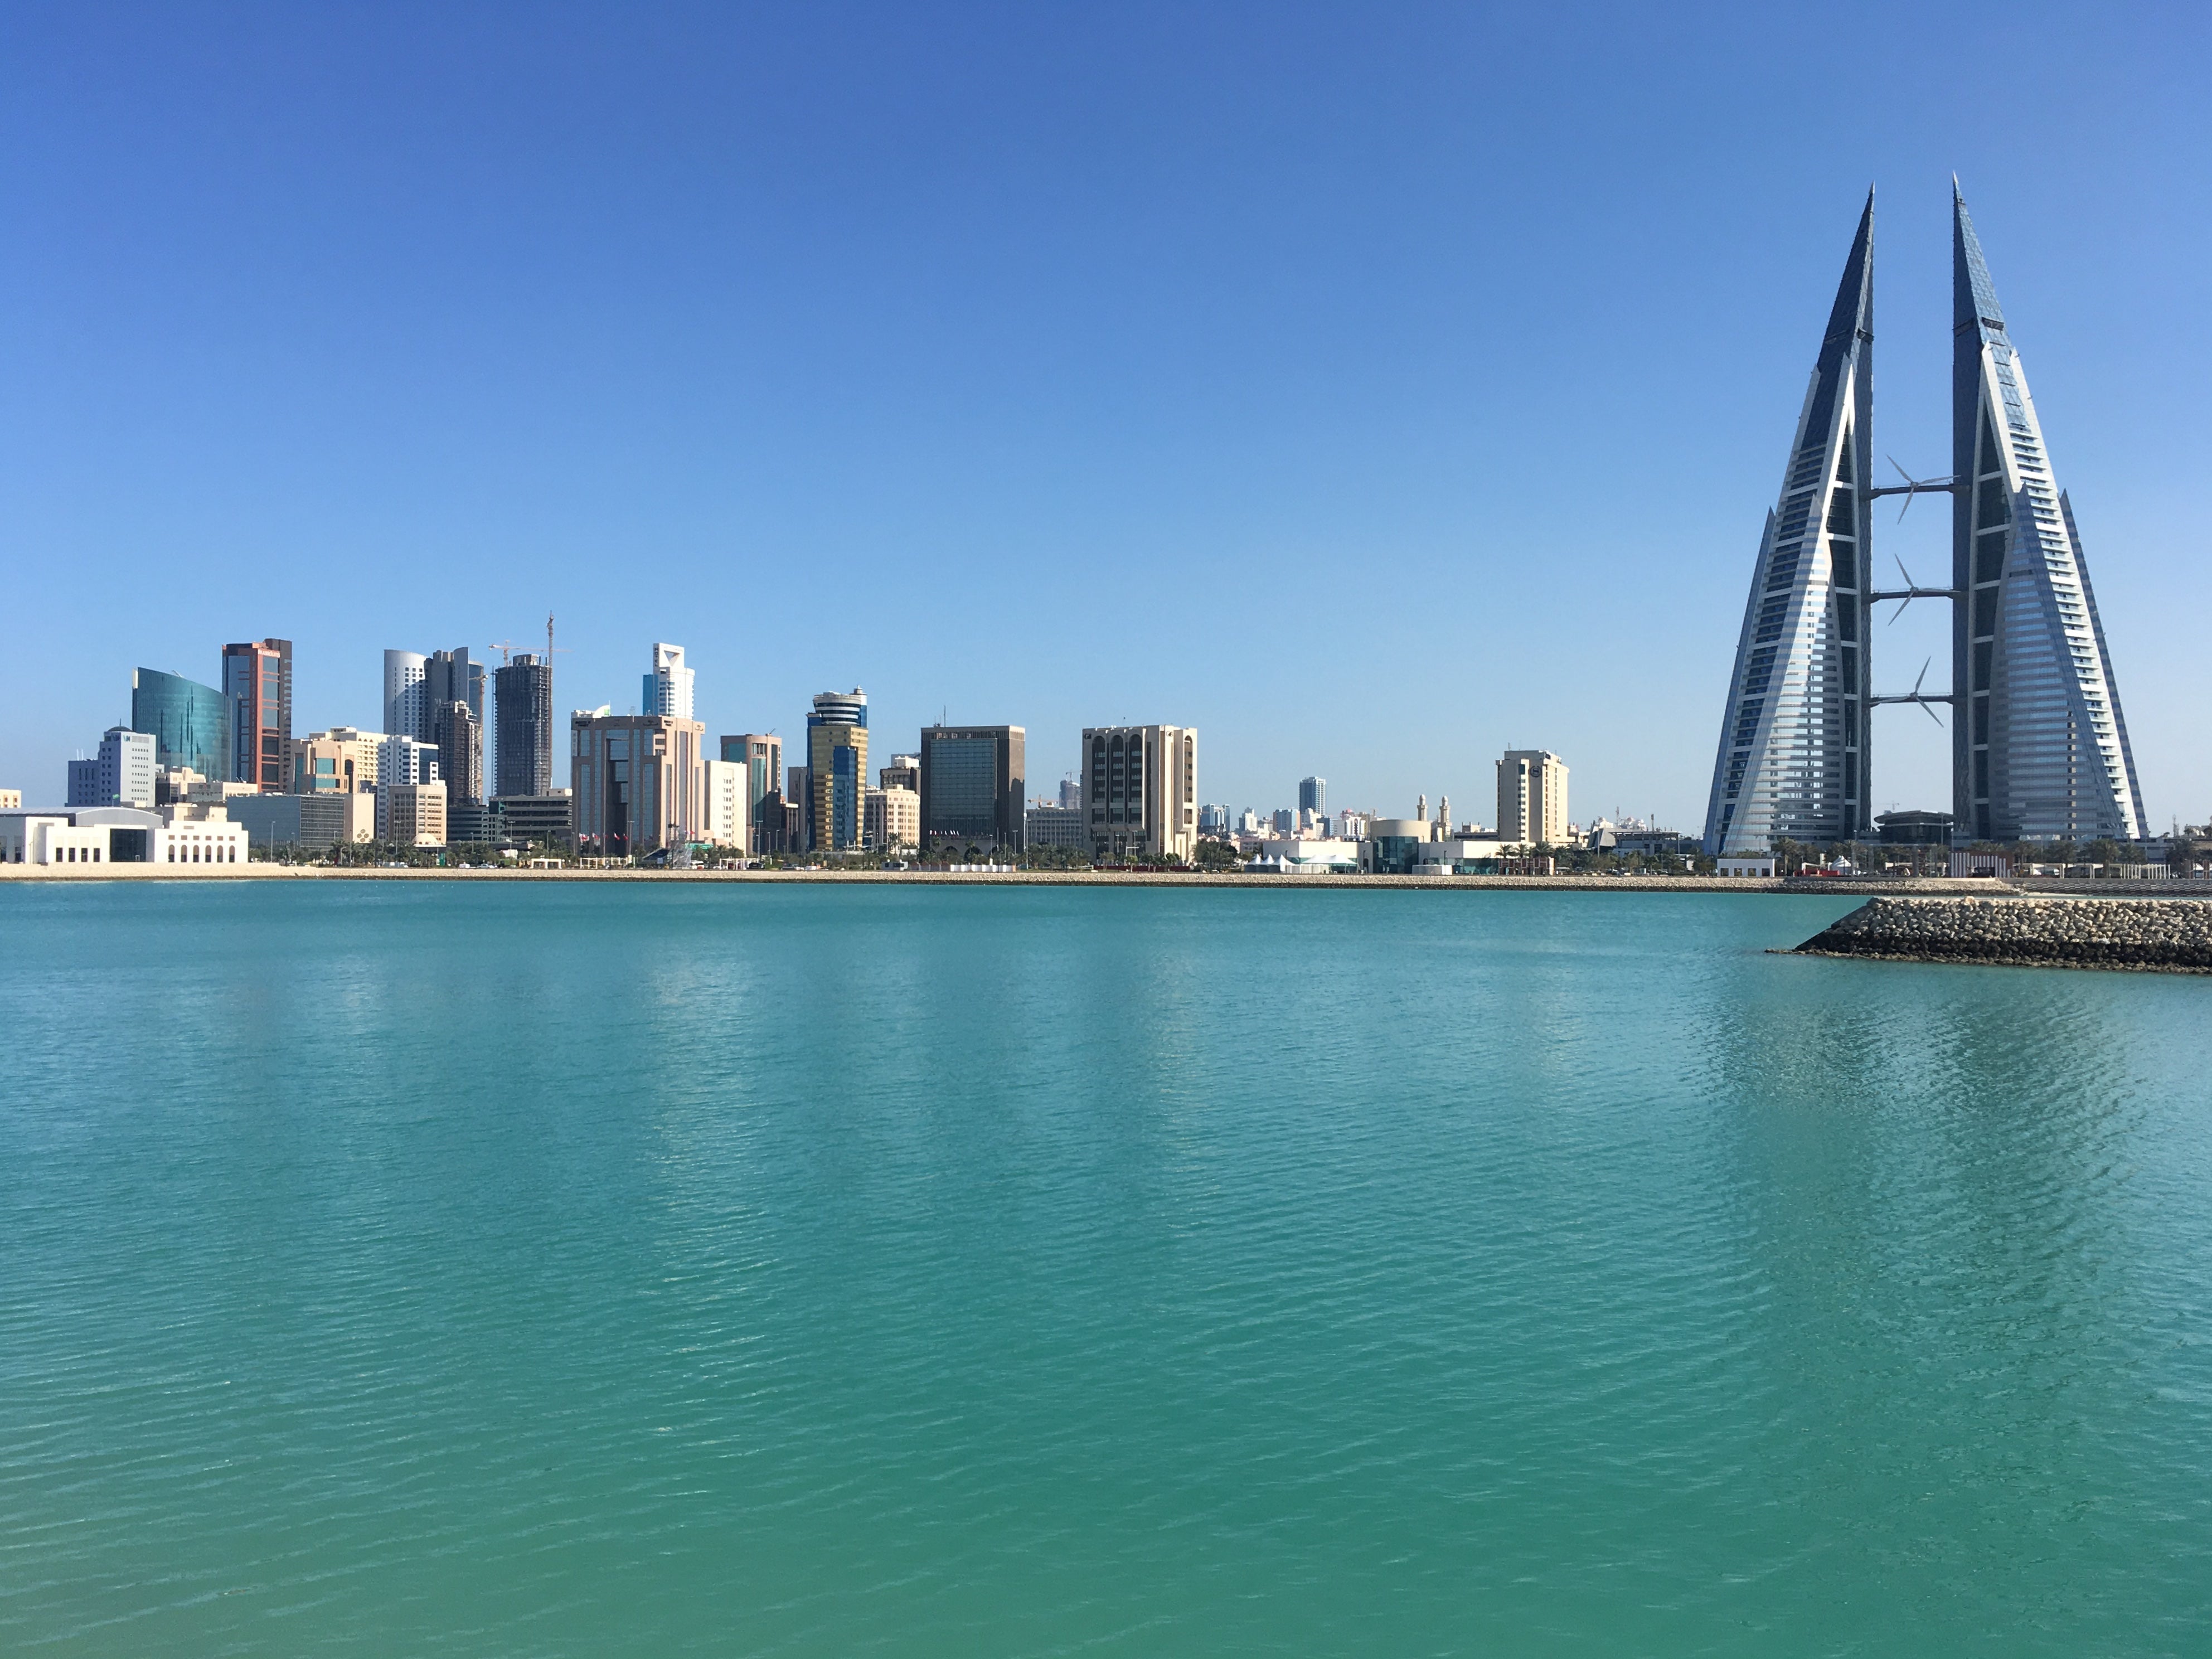 Distant dream: the skyline of Bahrain